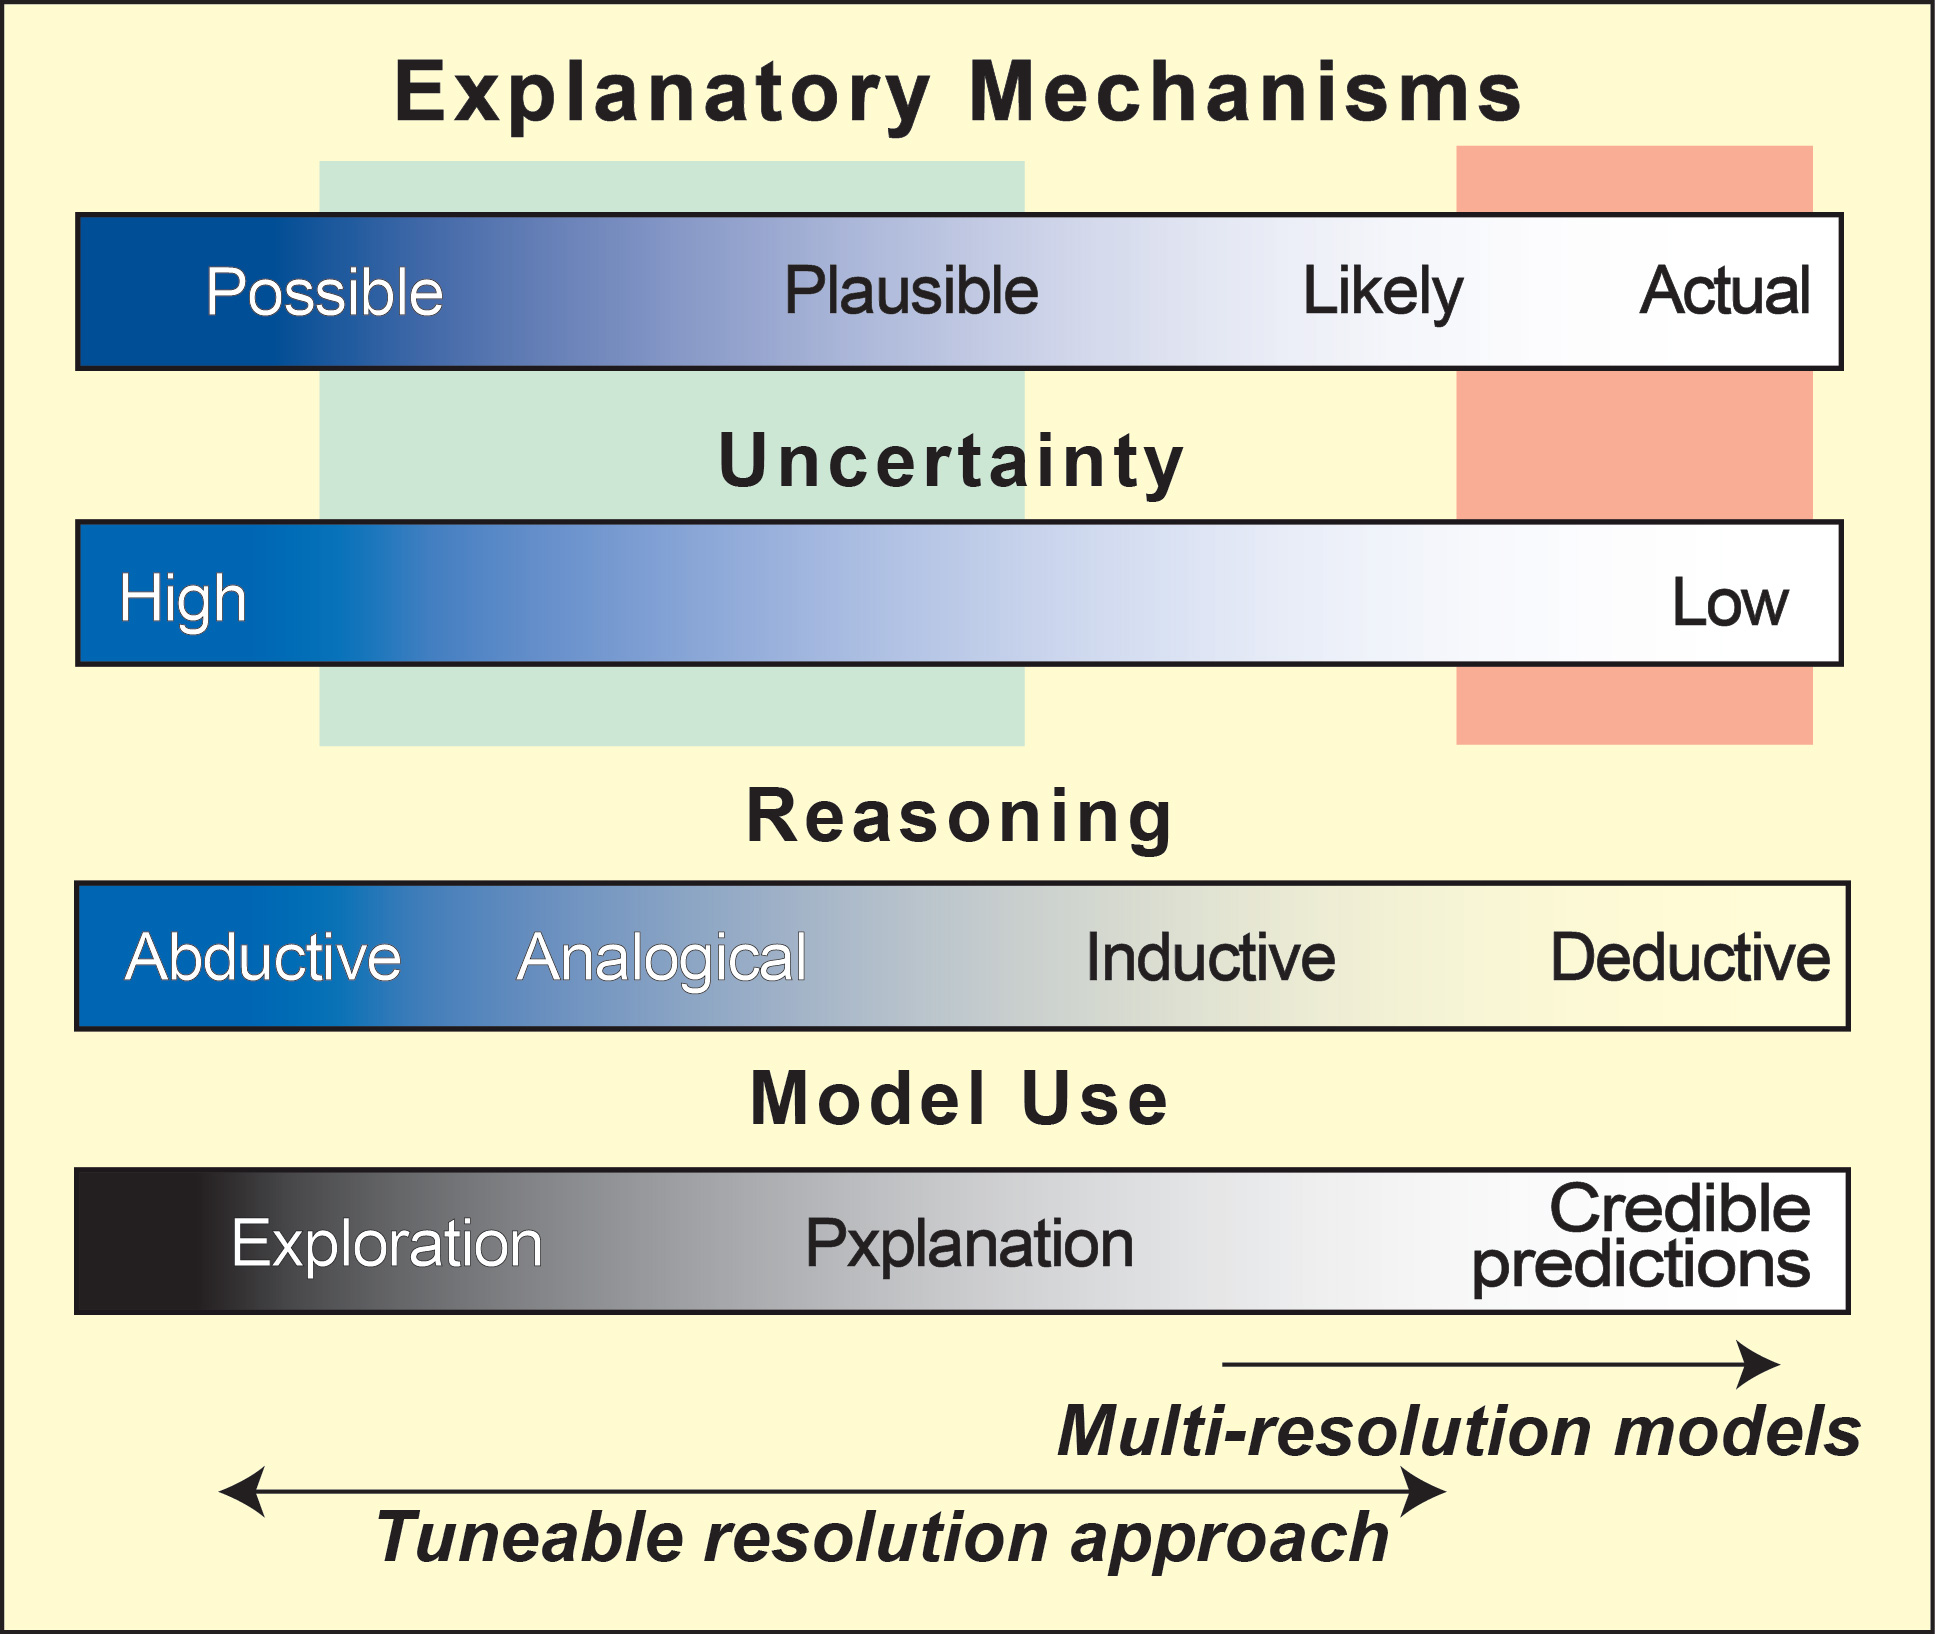 Image of Explanatory Mechanisms